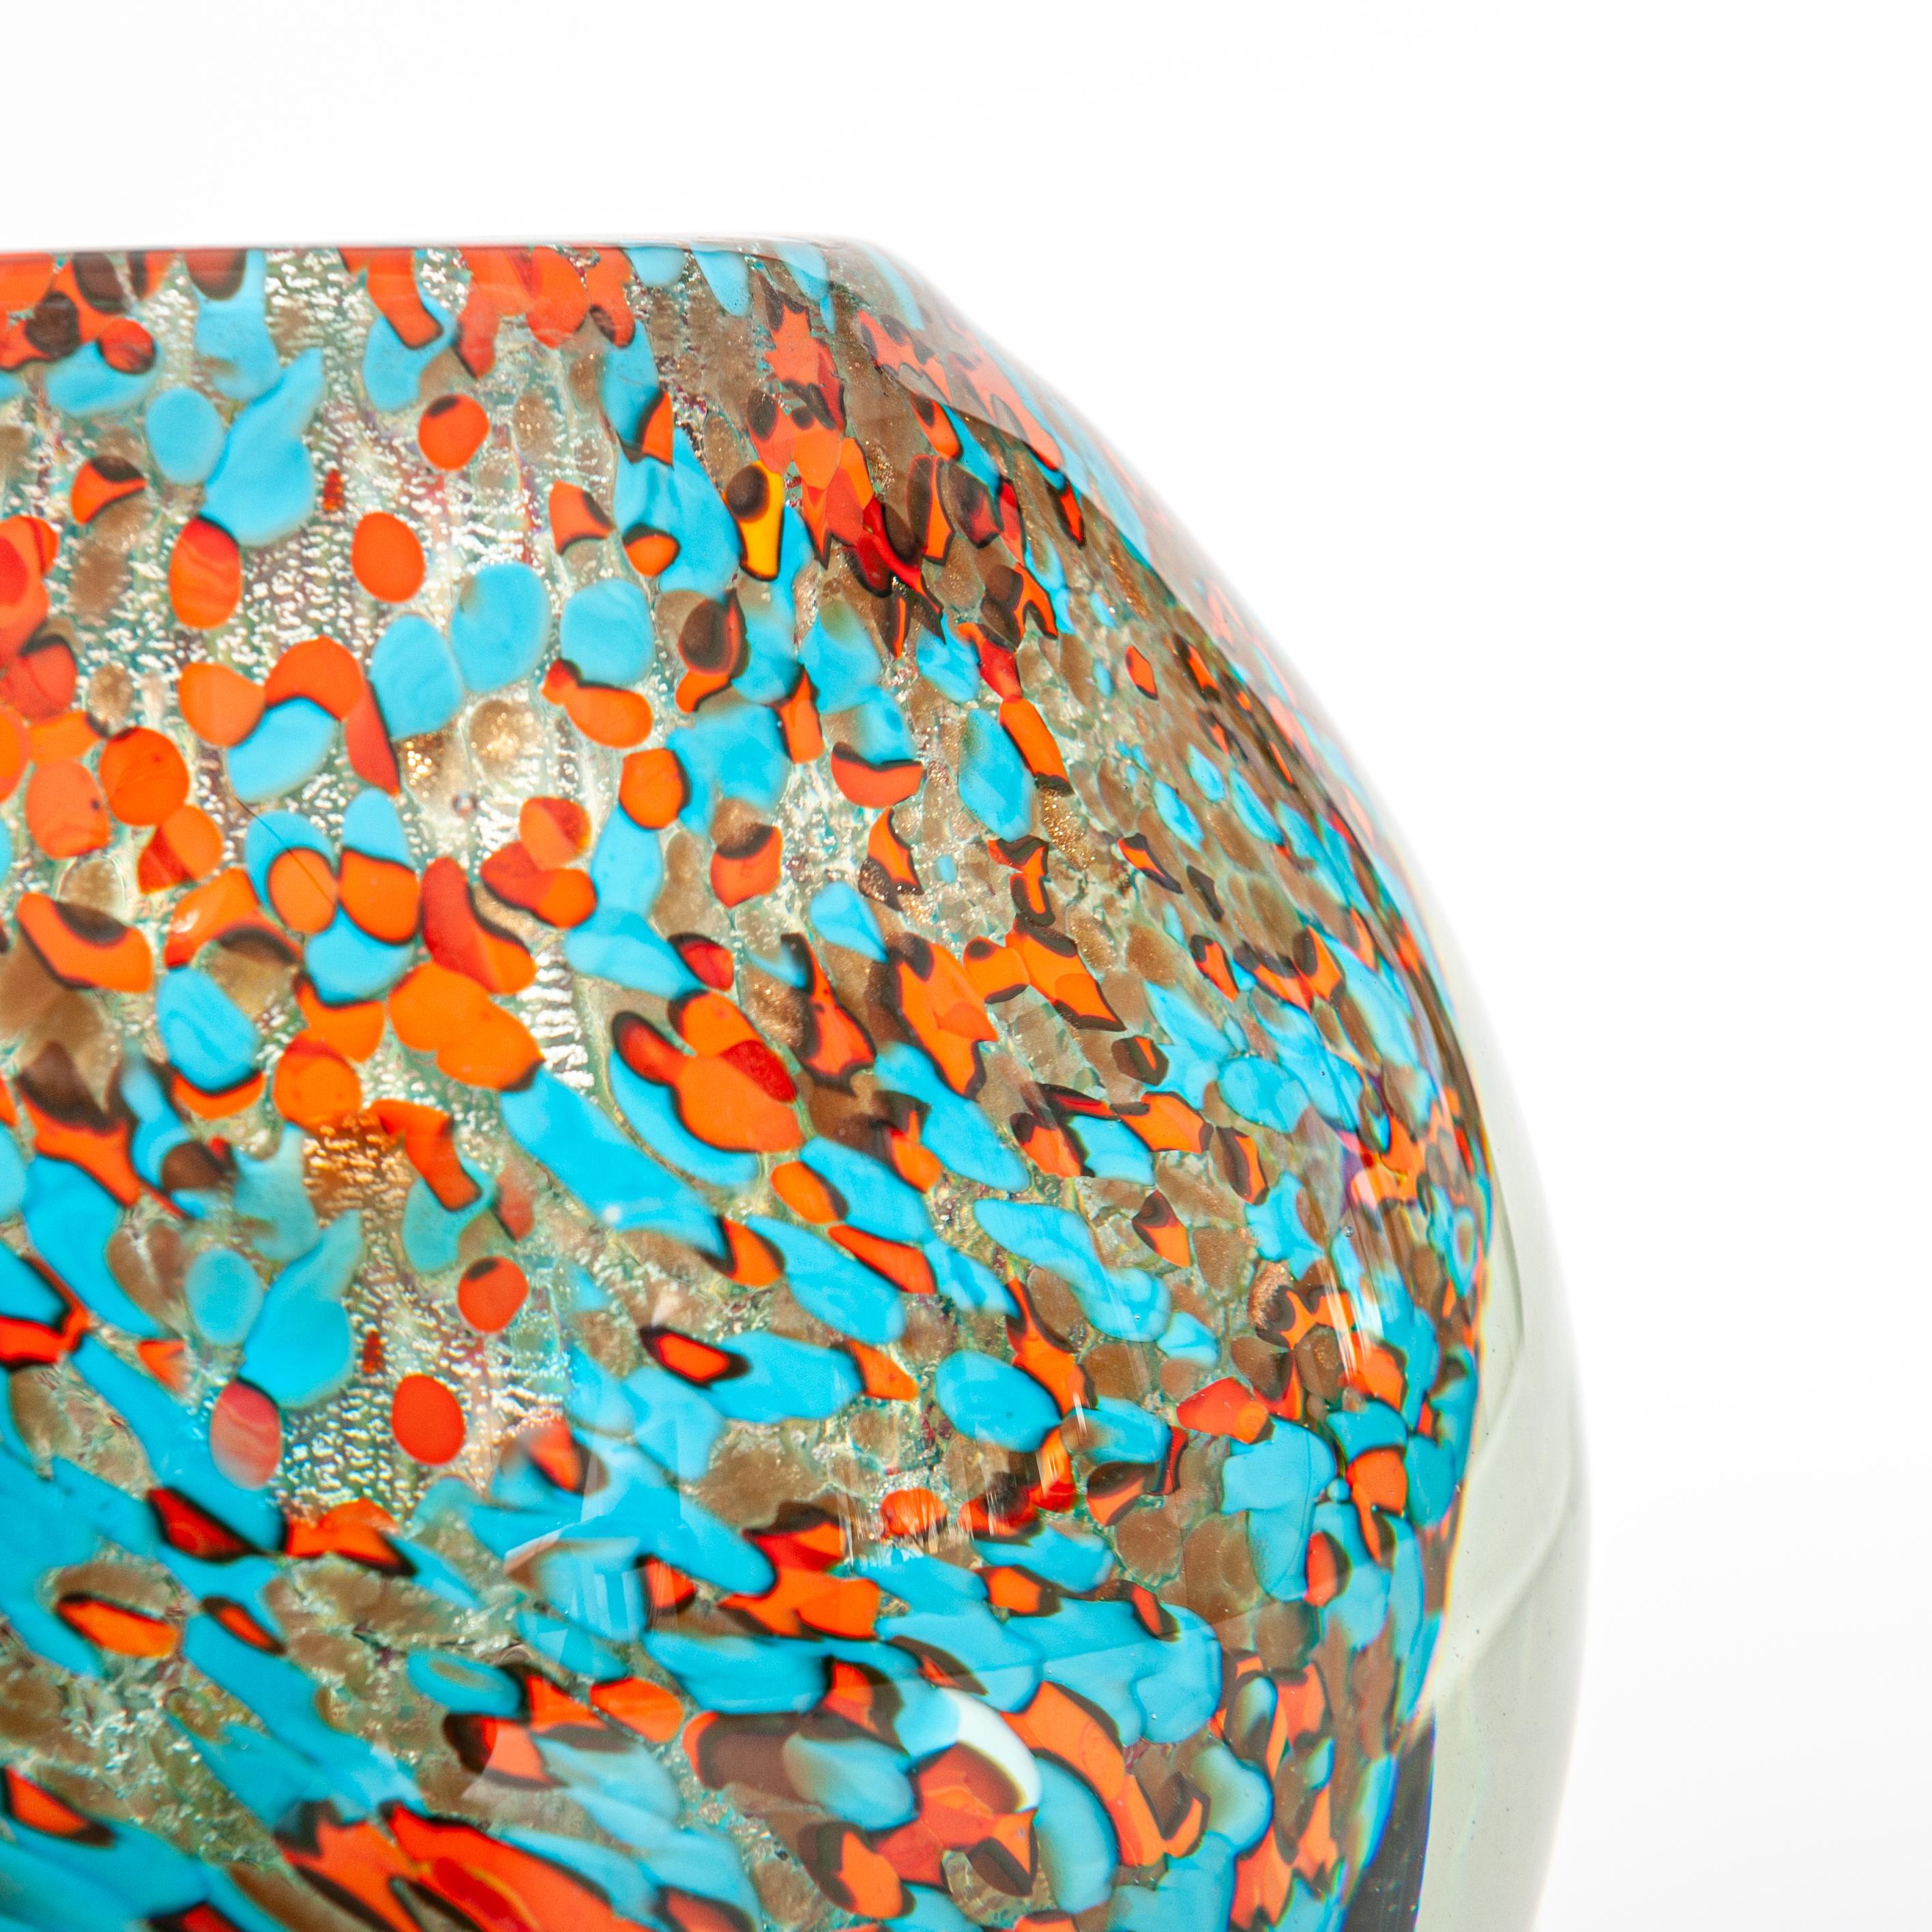 Contemporary Modern Italian Murano Glass Vase Turquois, Orange Colored by Alex Signoretti